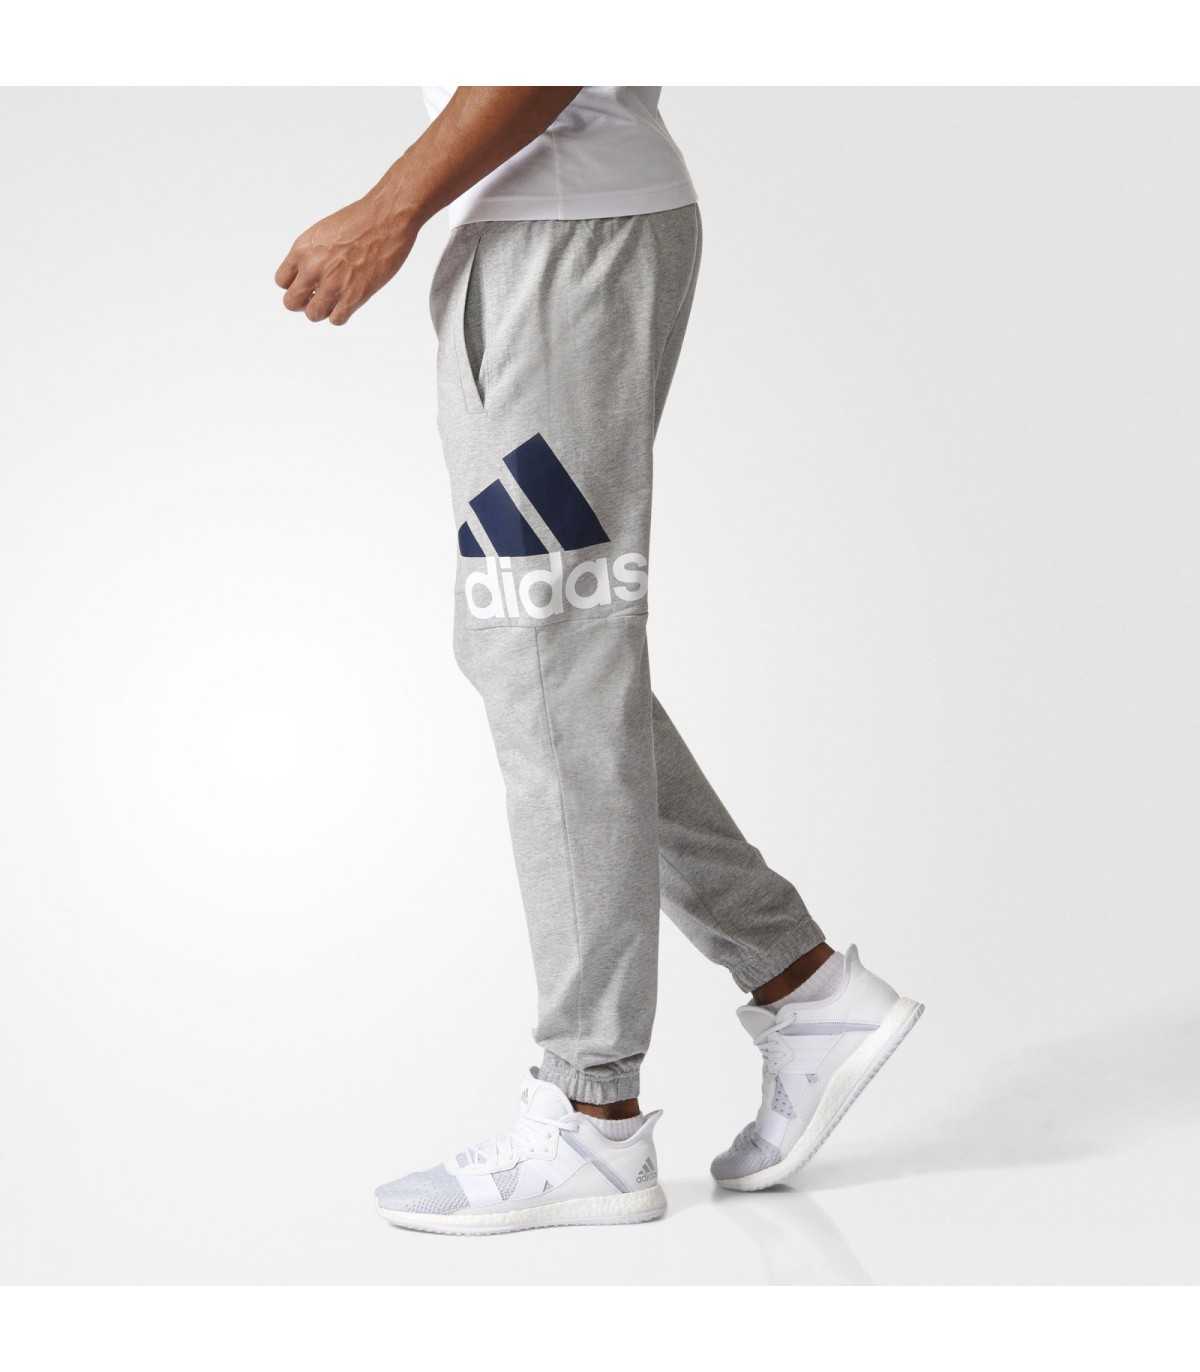 Pantalonera Adidas Modelo 6 Ropa Parral